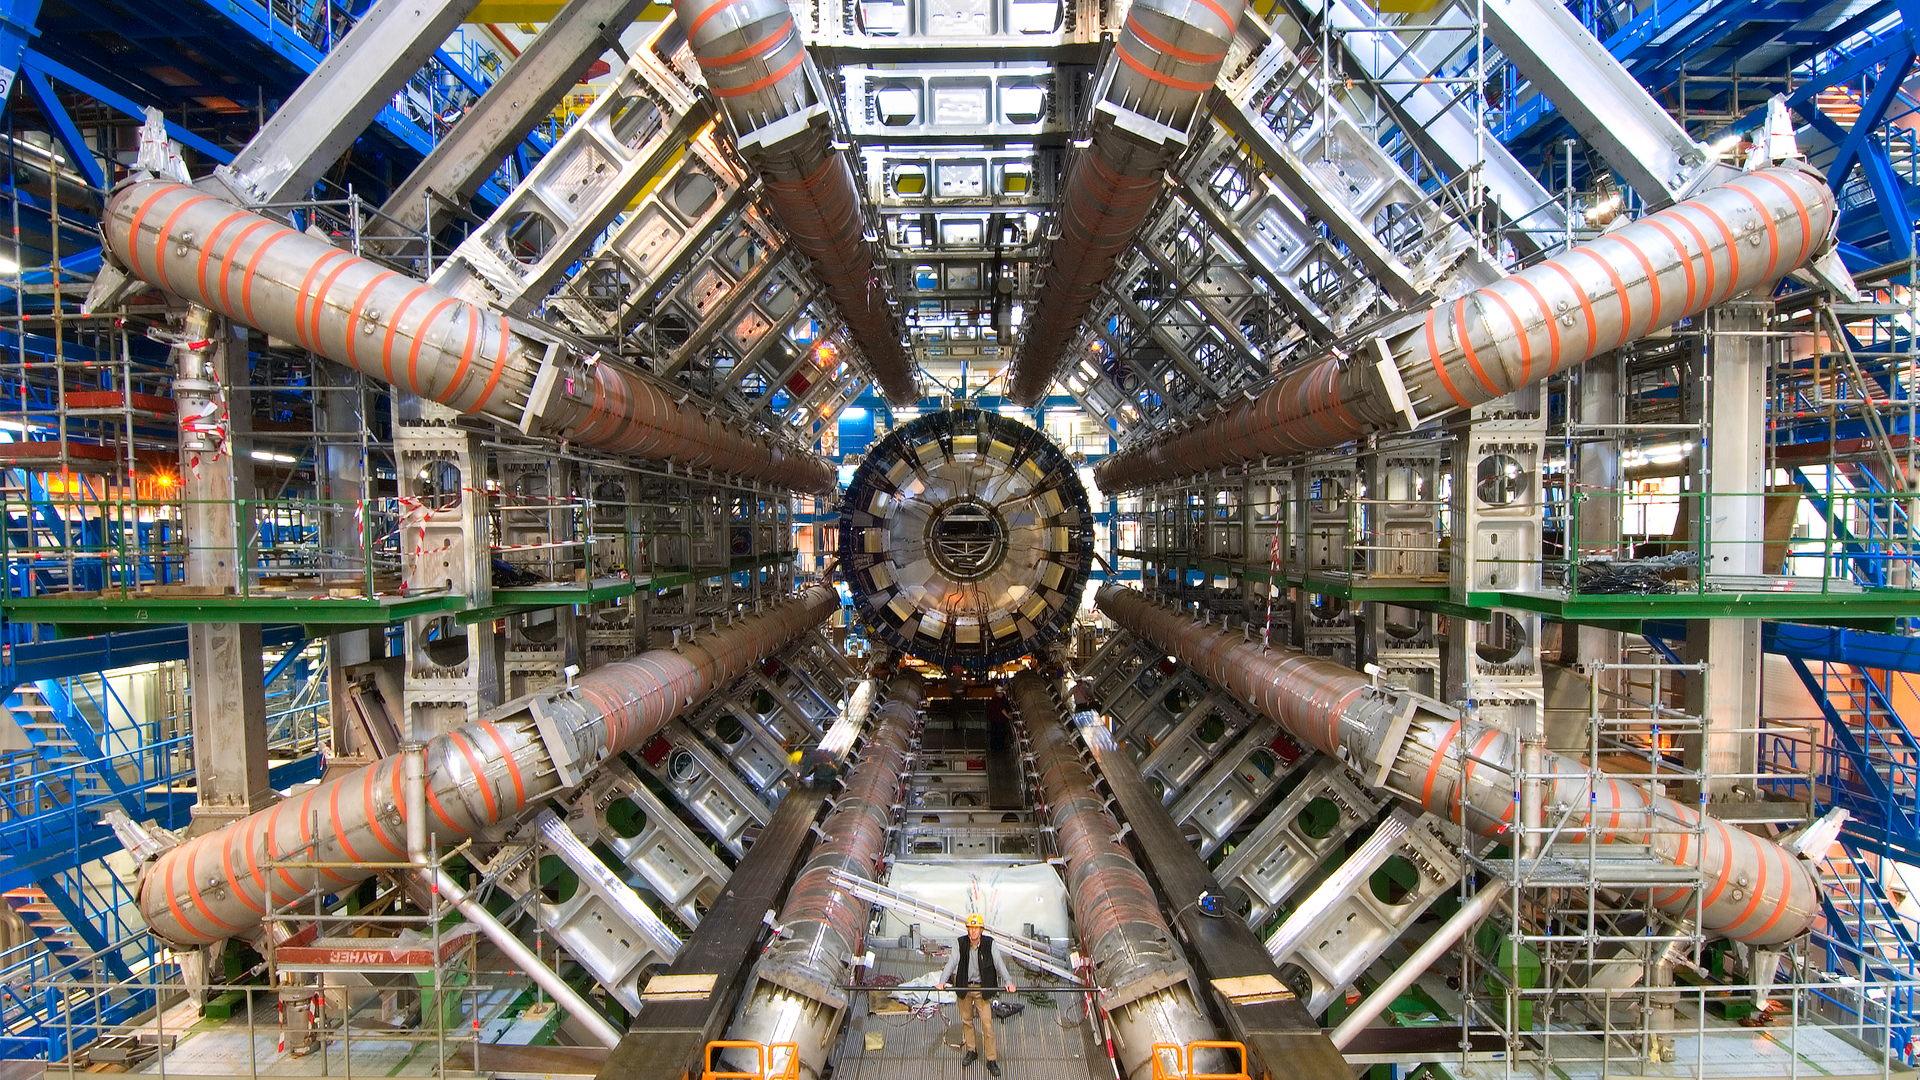 Να ανησυχήσουμε; Το CERN ξεκινά αύριο πειράματα με την μέγιστη ισχύ του για πρώτη φορά από την δημιουργία του